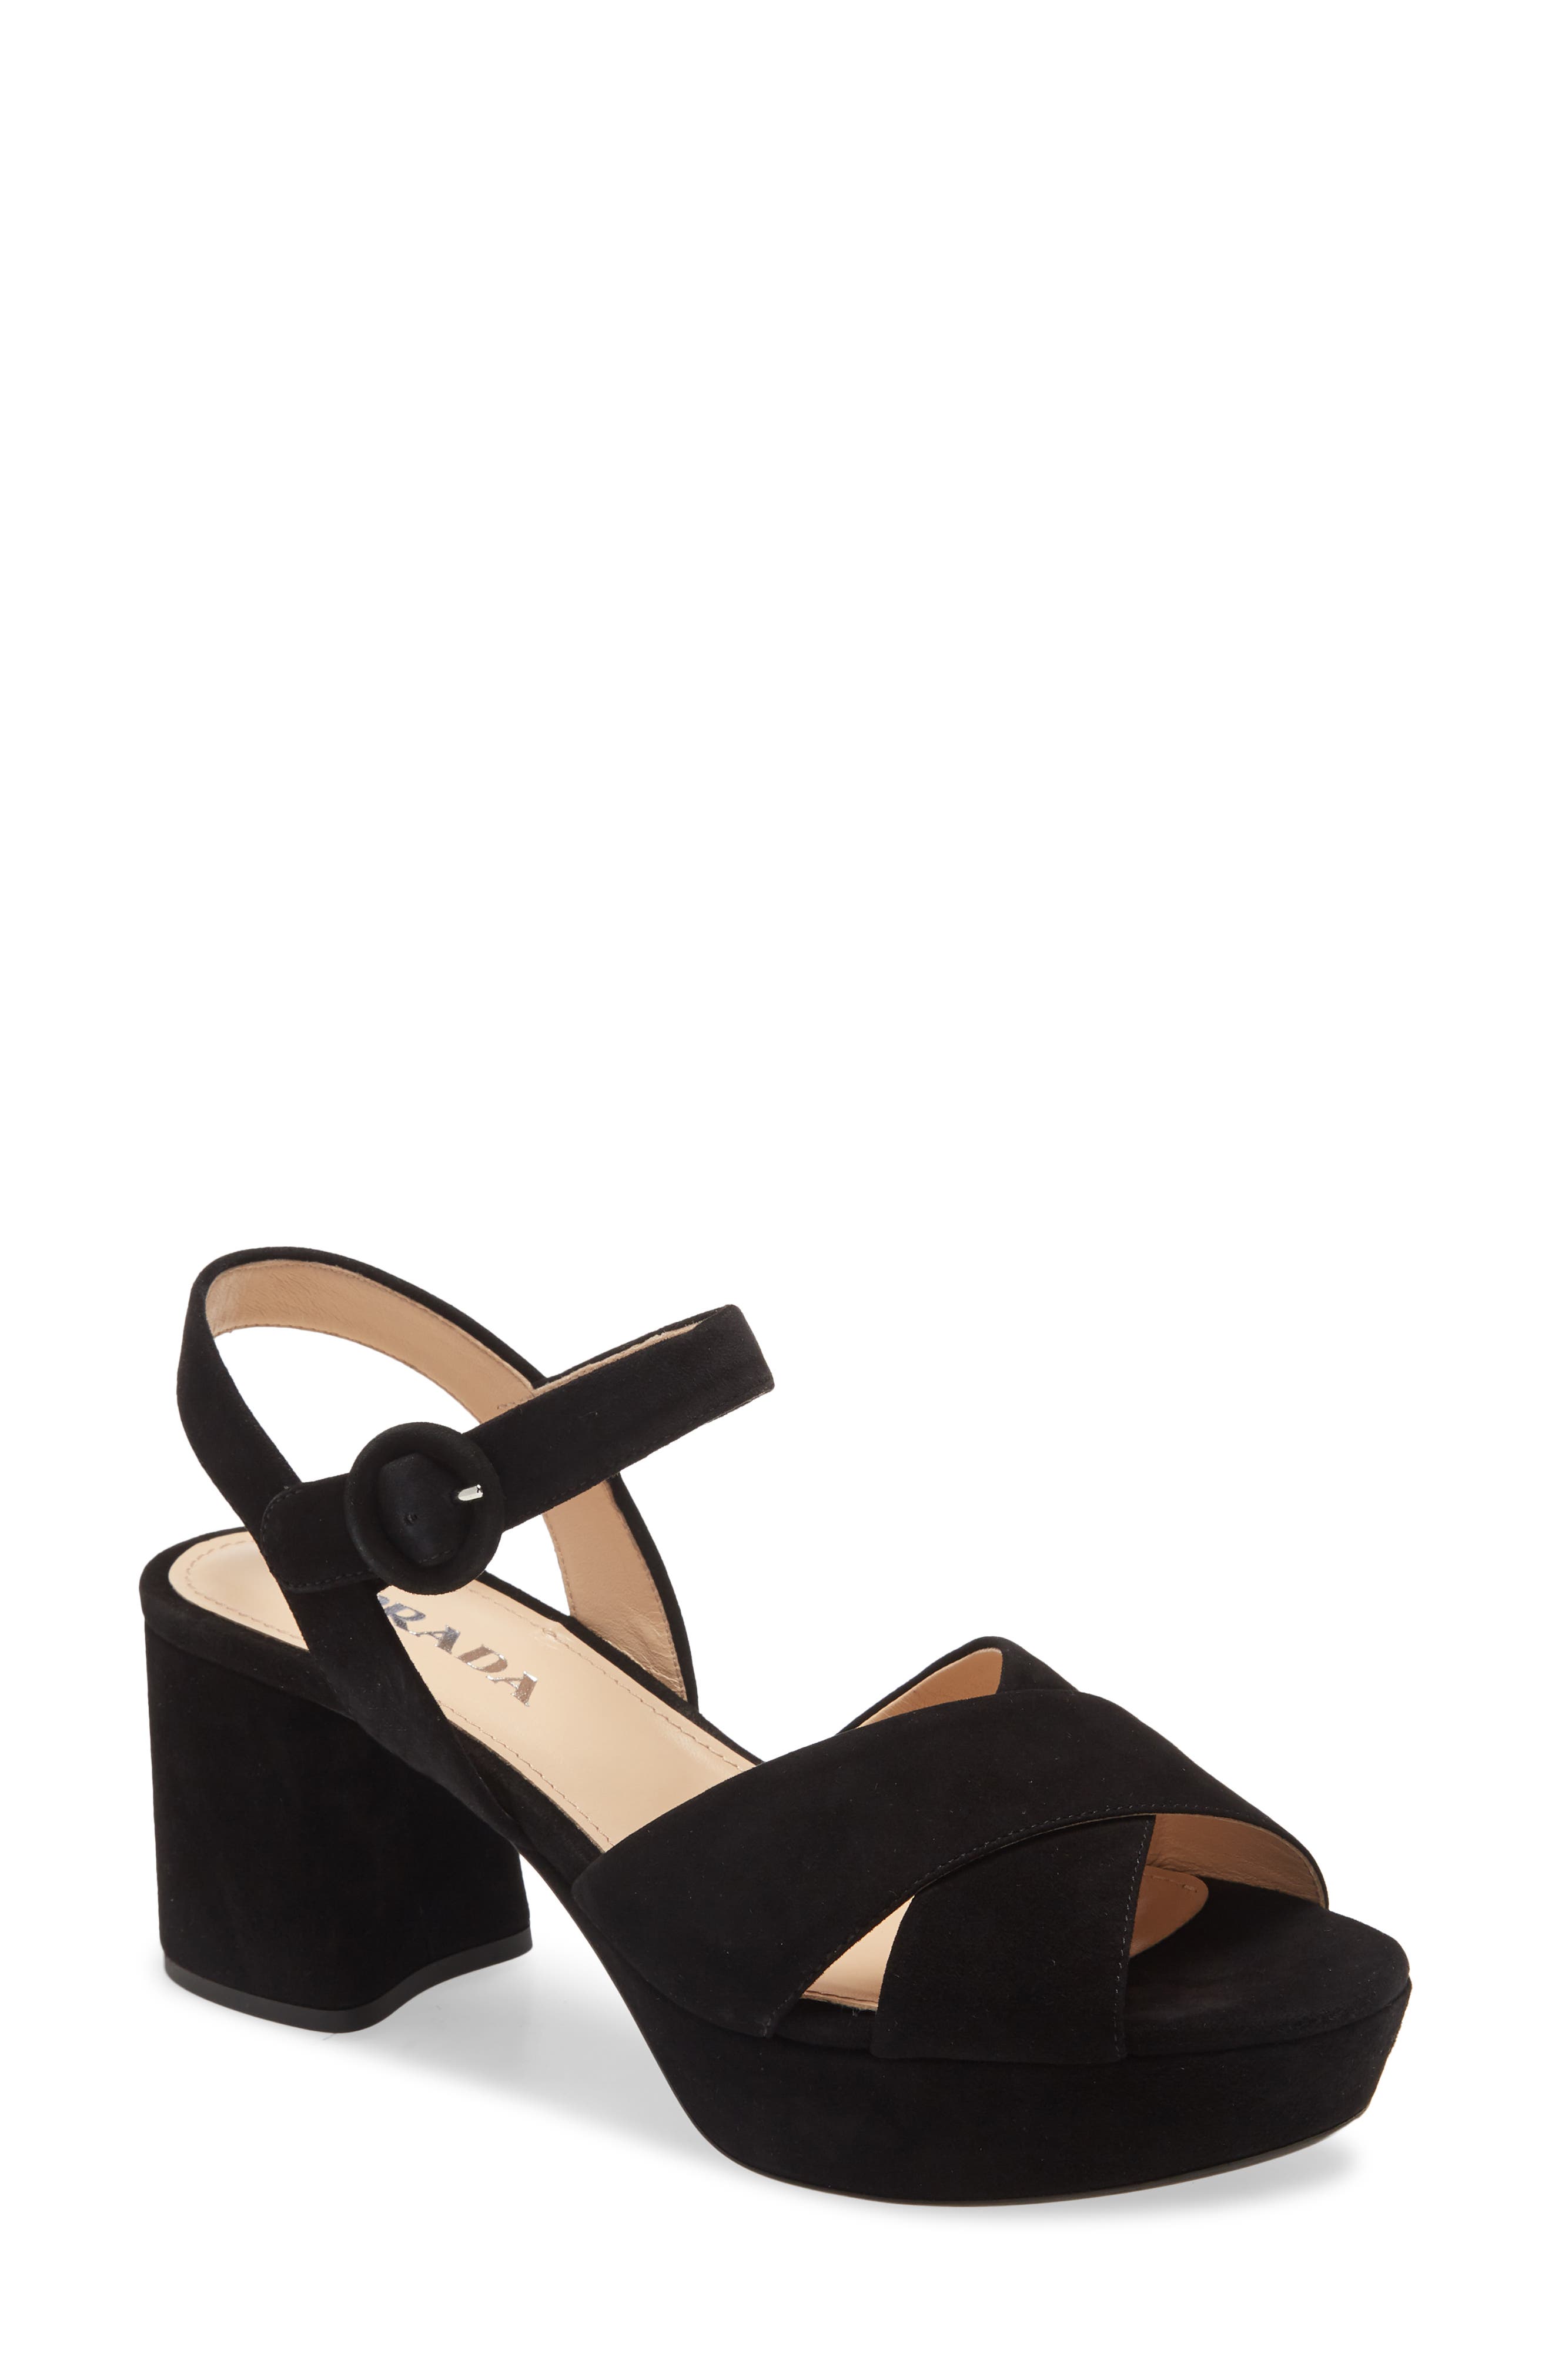 black prada heels